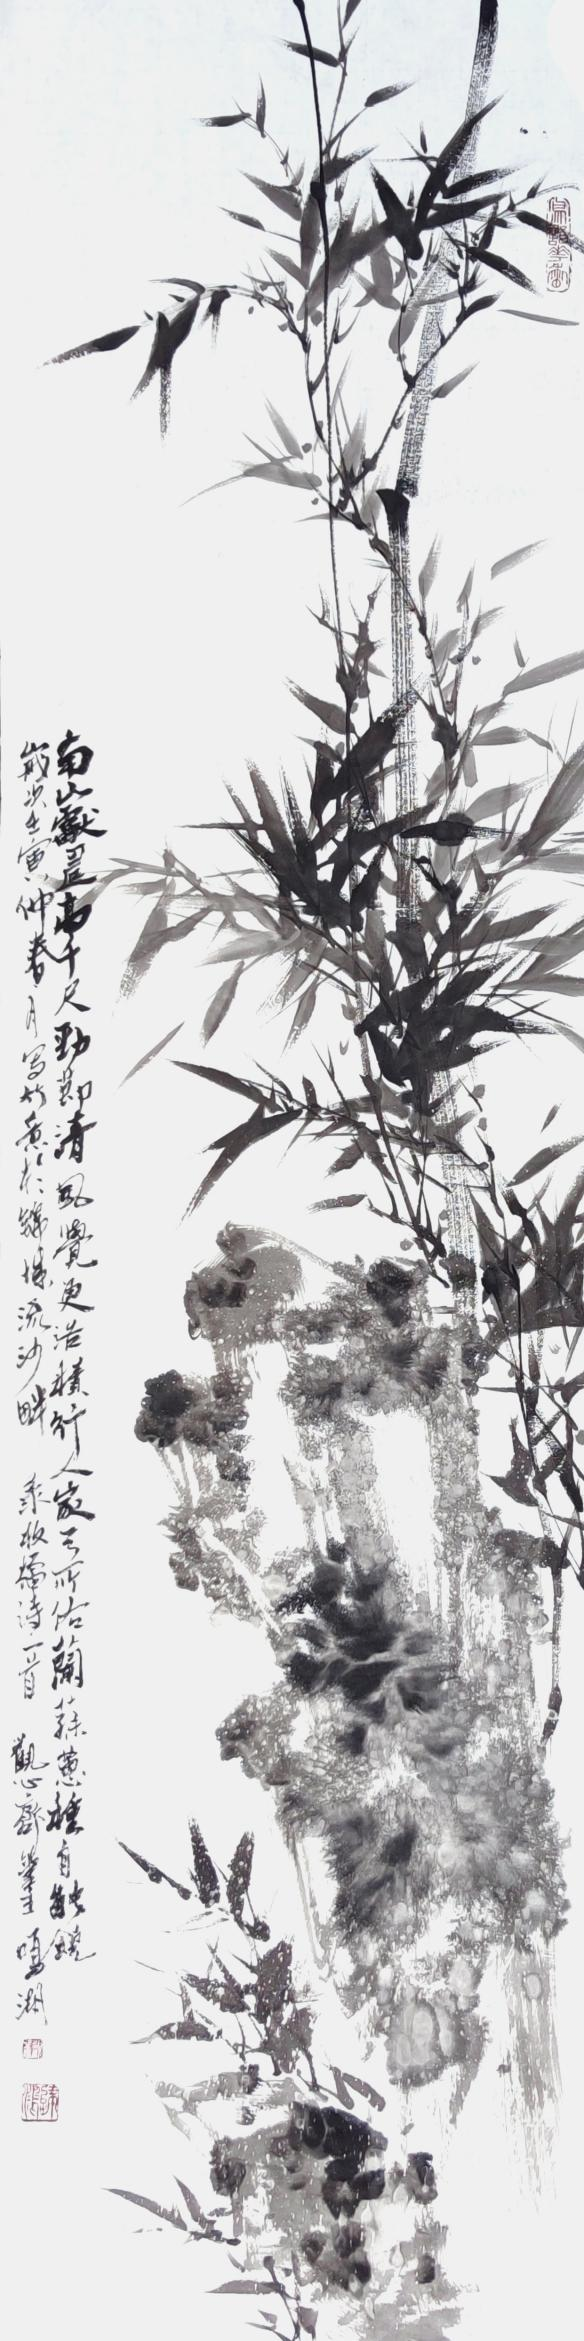 “万水千山”庆祝香港回归祖国25周年作品系列展——艺术家邓鳴湖